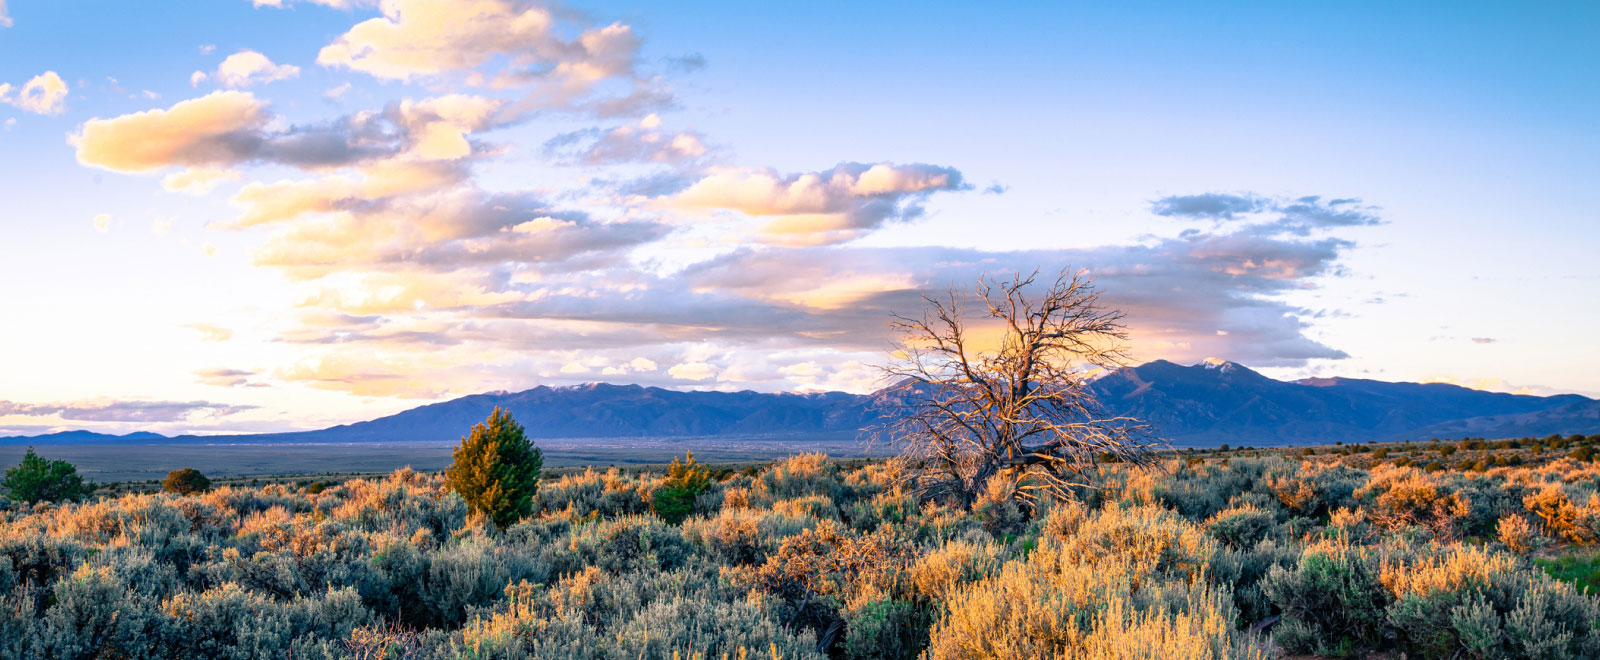 Taos landscape